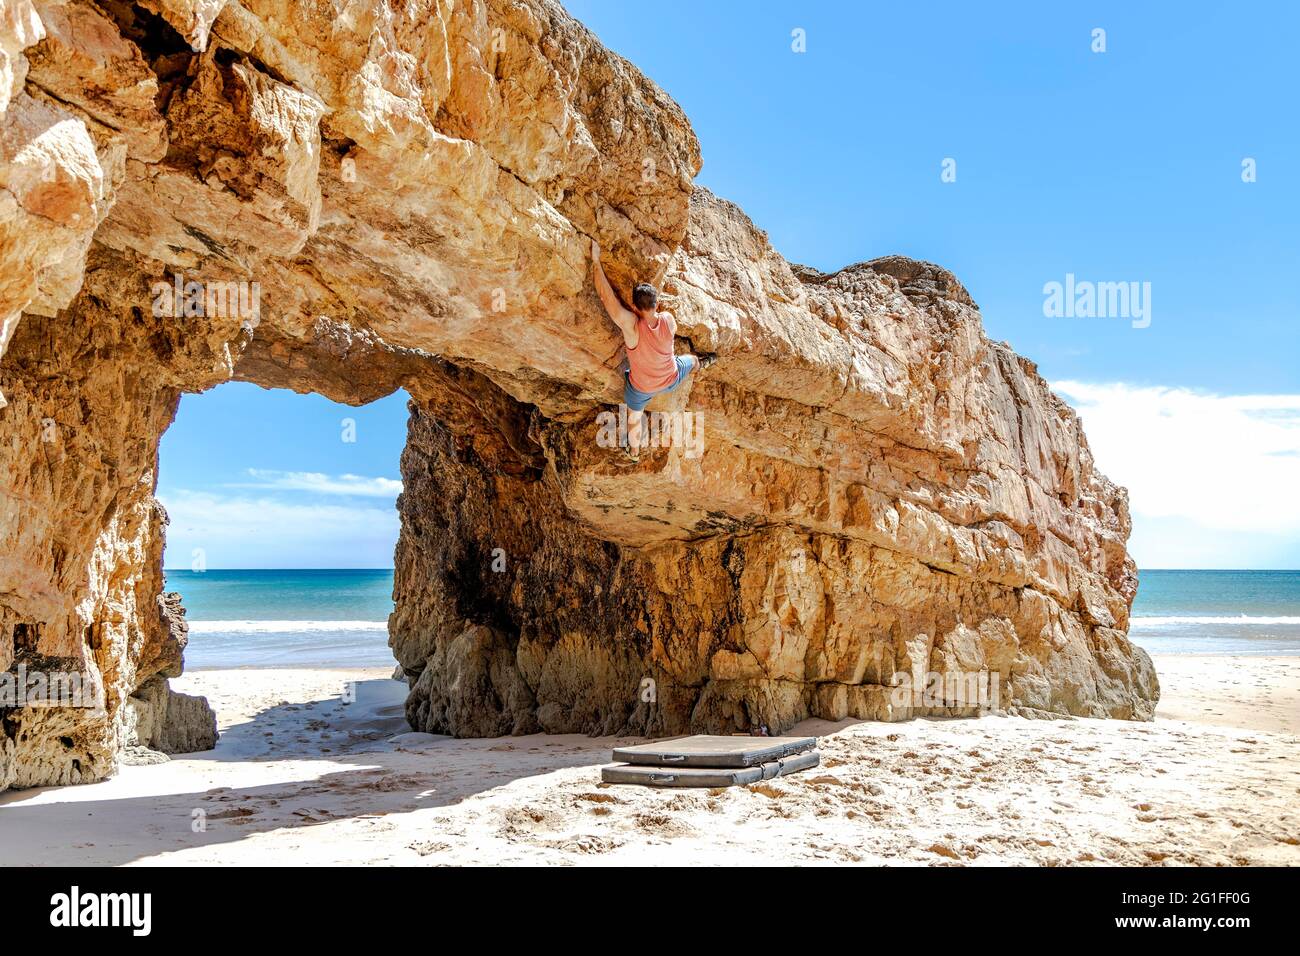 Un jeune grimpeur en toute sécurité escalade une falaise jaune en Algarve, au Portugal Banque D'Images